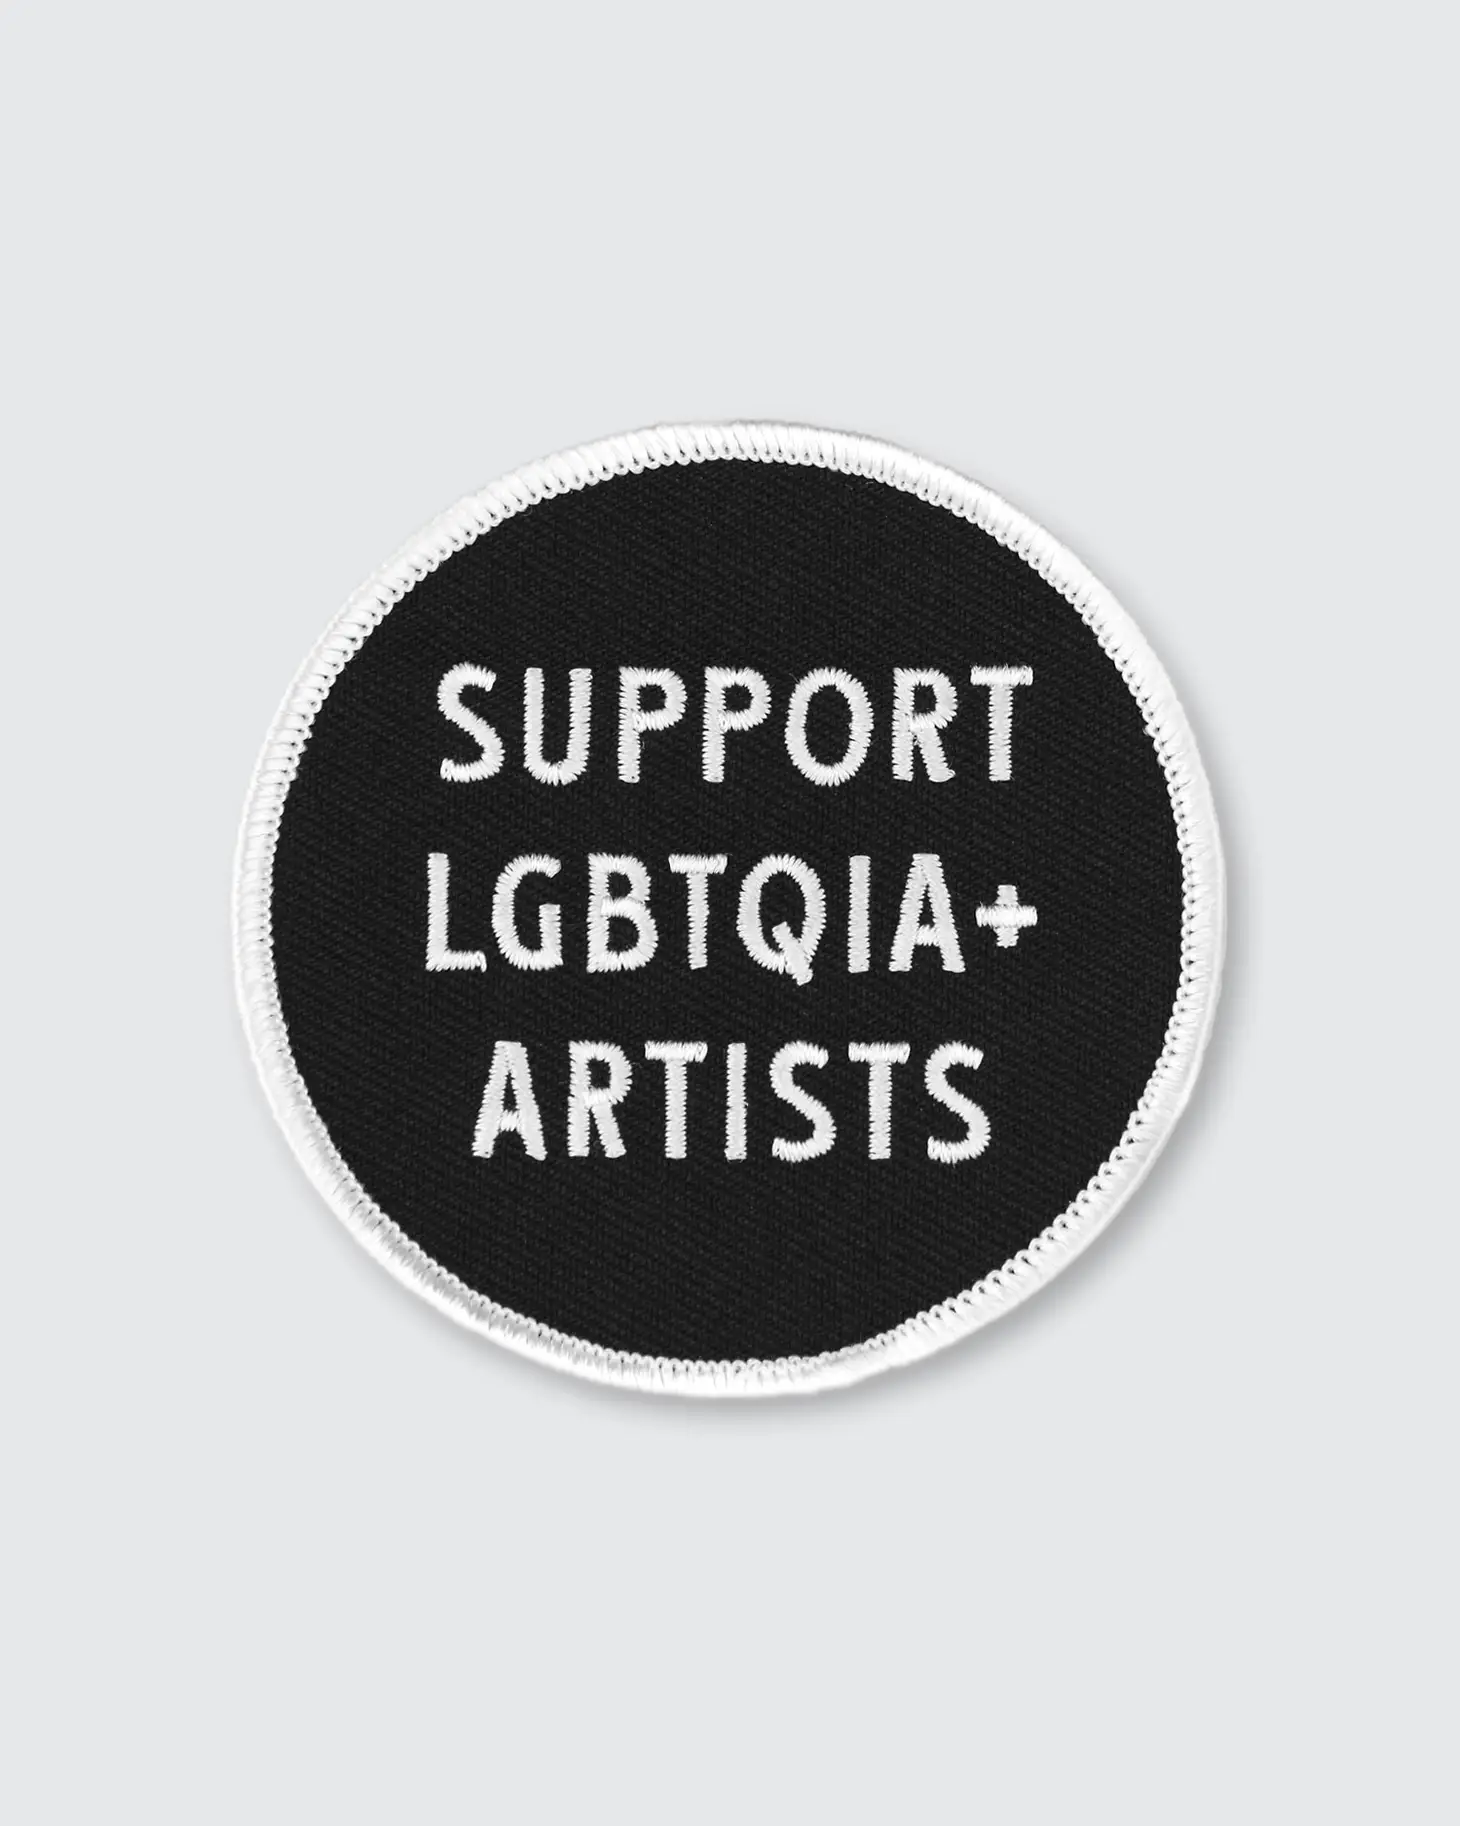 Support LGBTQIA+ Artists • Patch